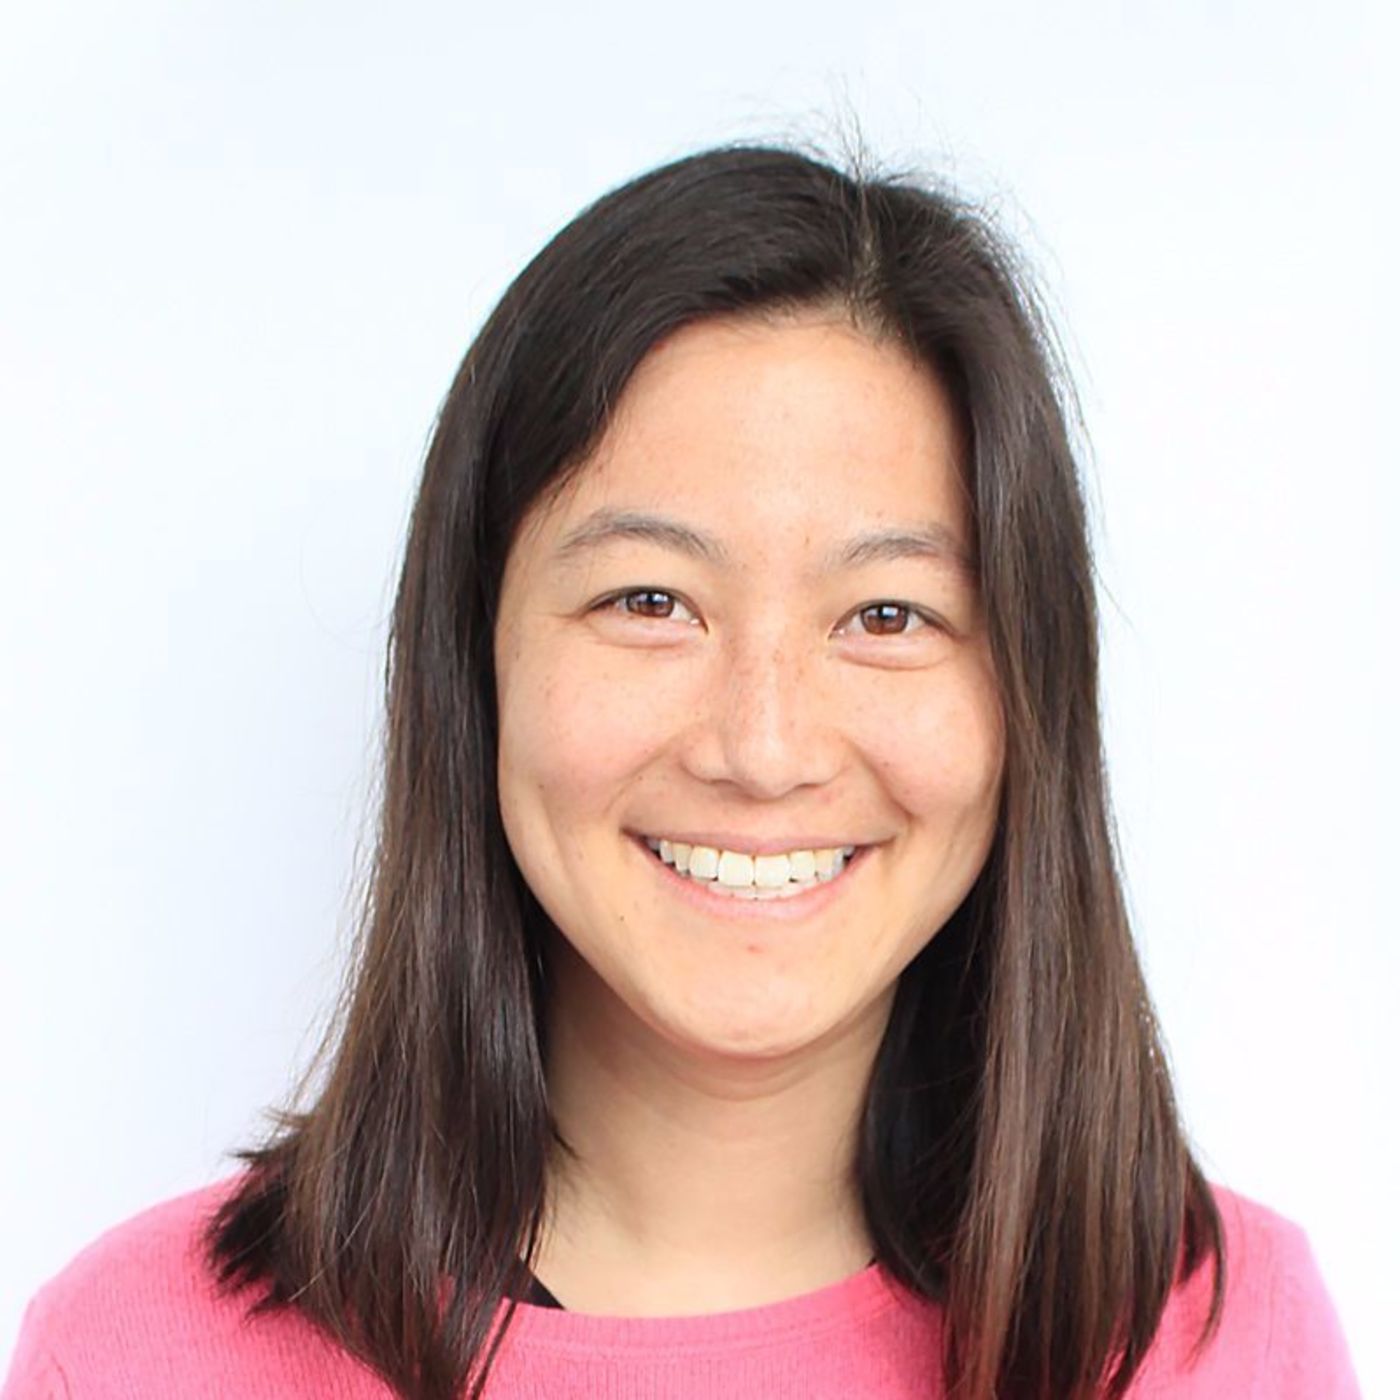 Elizabeth Yin, Partner at 500 Startups